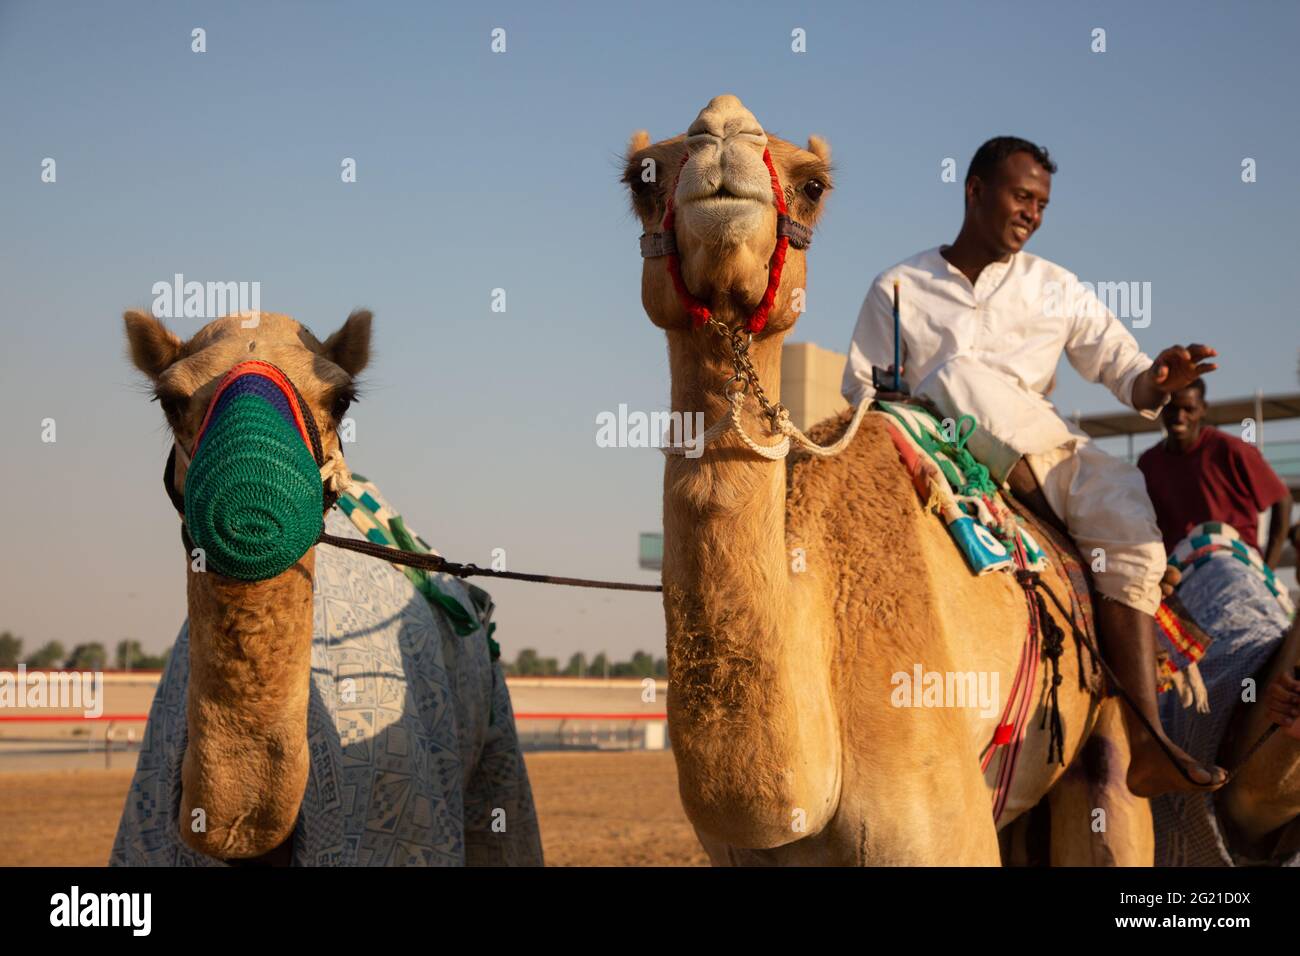 Entraînement à dos de chameau à L'HIPPODROME AL Marmoom Camel, Dubaï, Émirats arabes Unis Banque D'Images